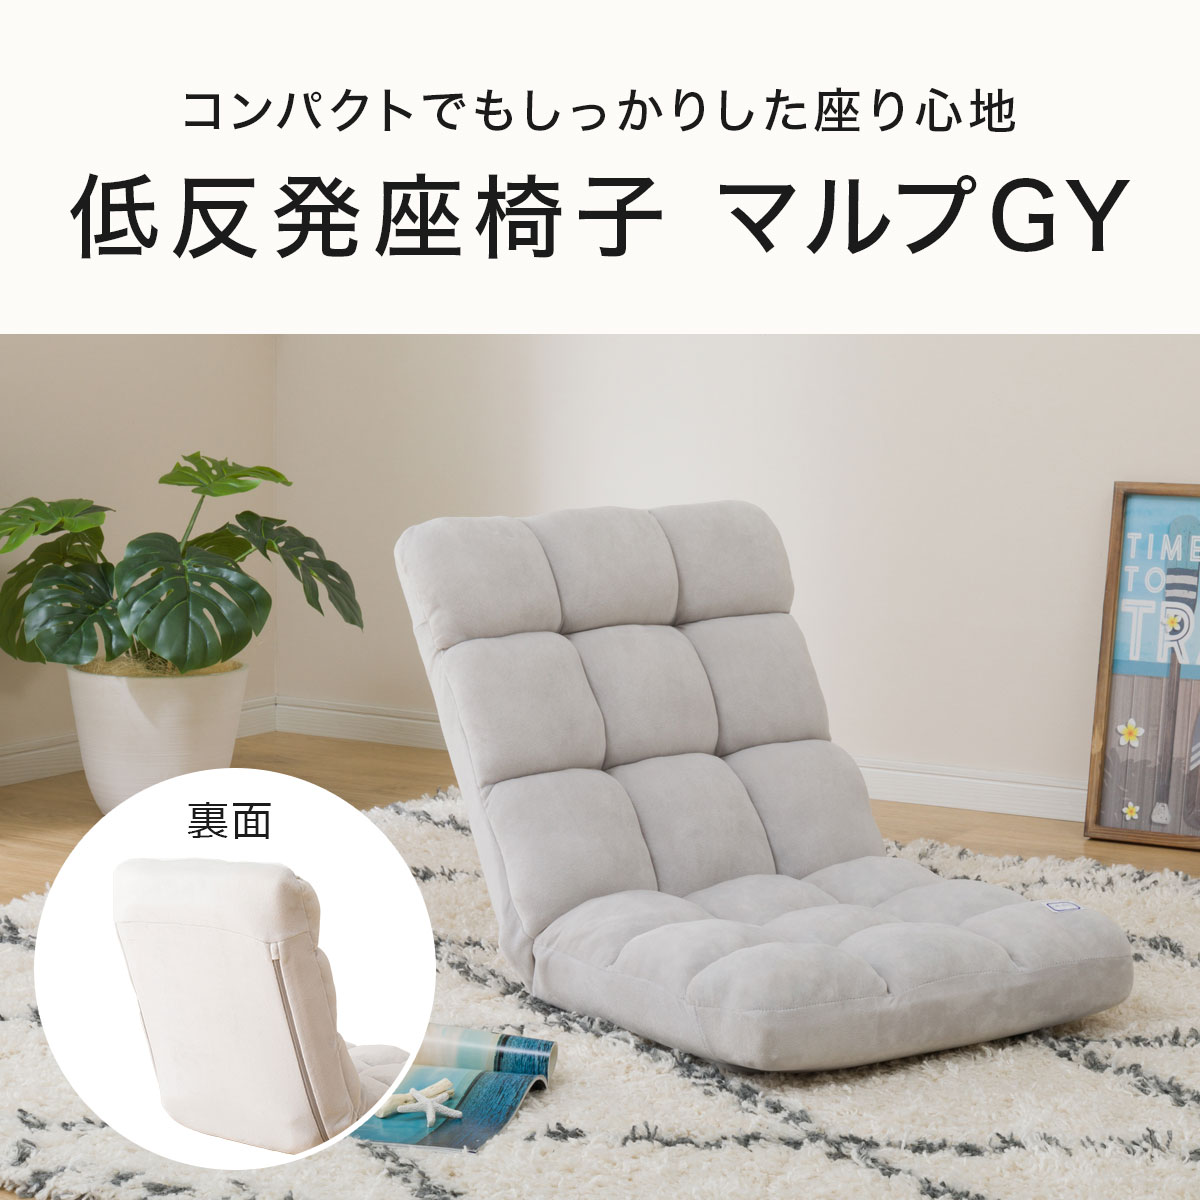 コンパクト低反発座椅子(マルプGY)通販 ニトリネット【公式】 家具・インテリア通販